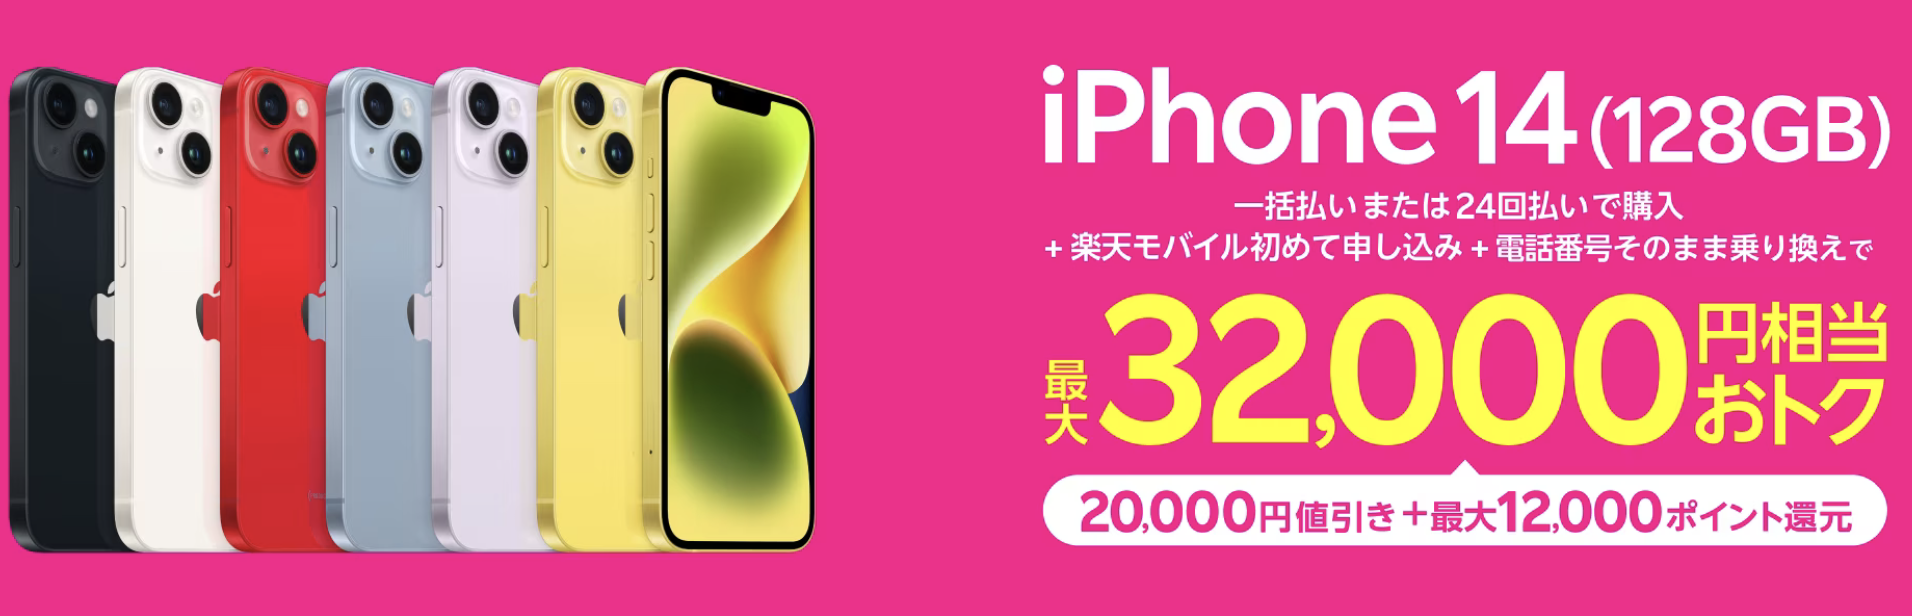 特価：楽天モバイル、iPhone 14を2万円引き